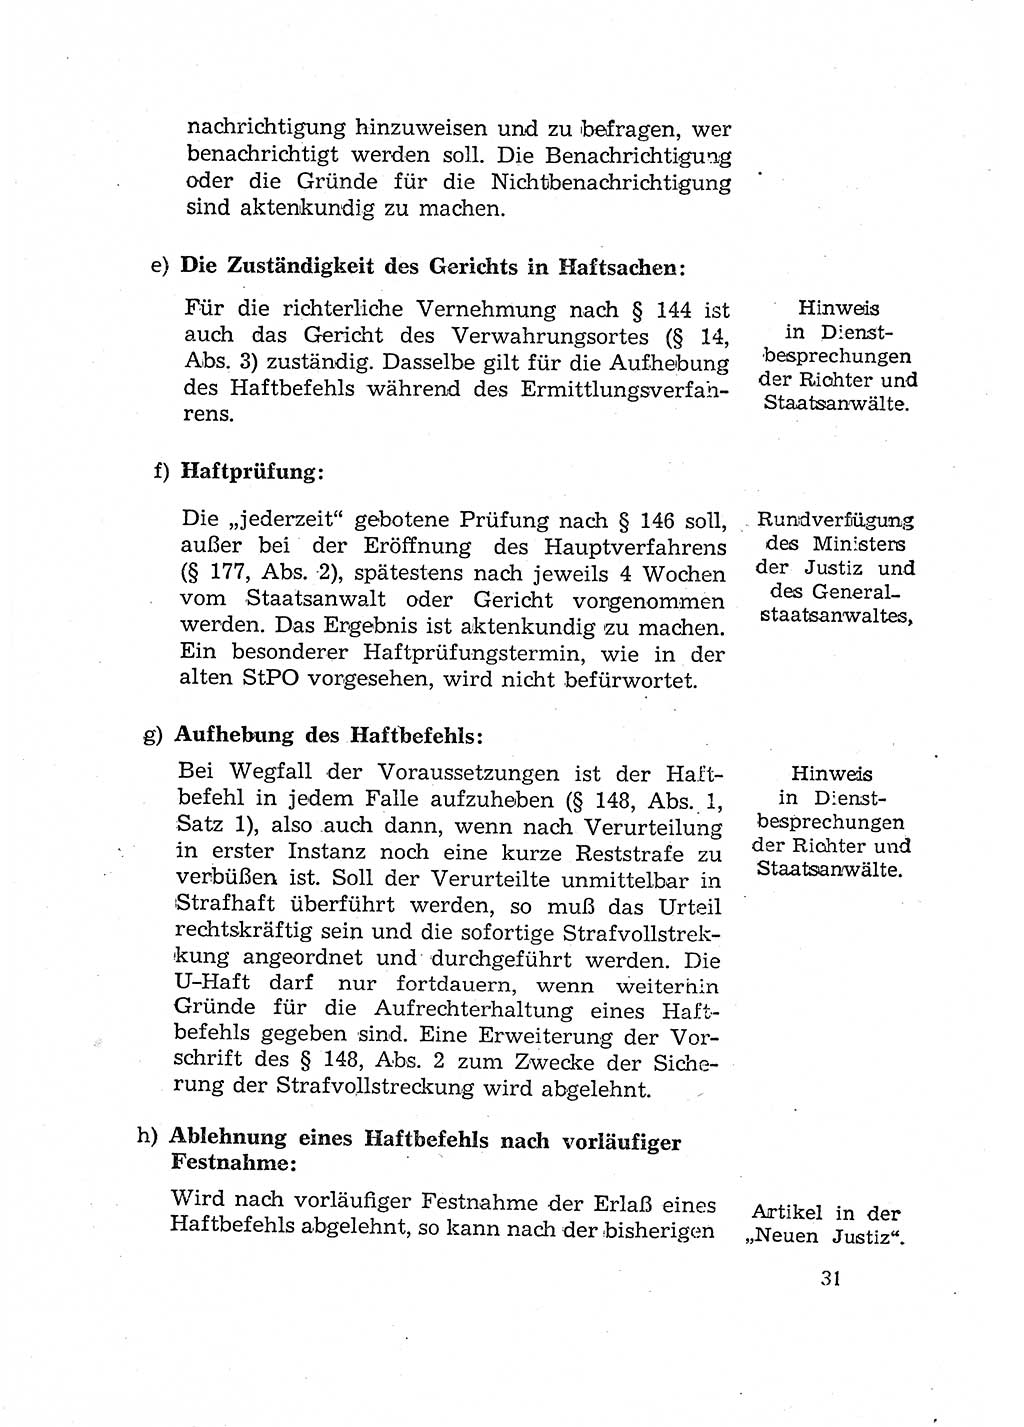 Bericht der Kommission zur Überprüfung der Anwendung der StPO (Strafprozeßordnung) [Deutsche Demokratische Republik (DDR)] 1956, Seite 31 (Ber. StPO DDR 1956, S. 31)